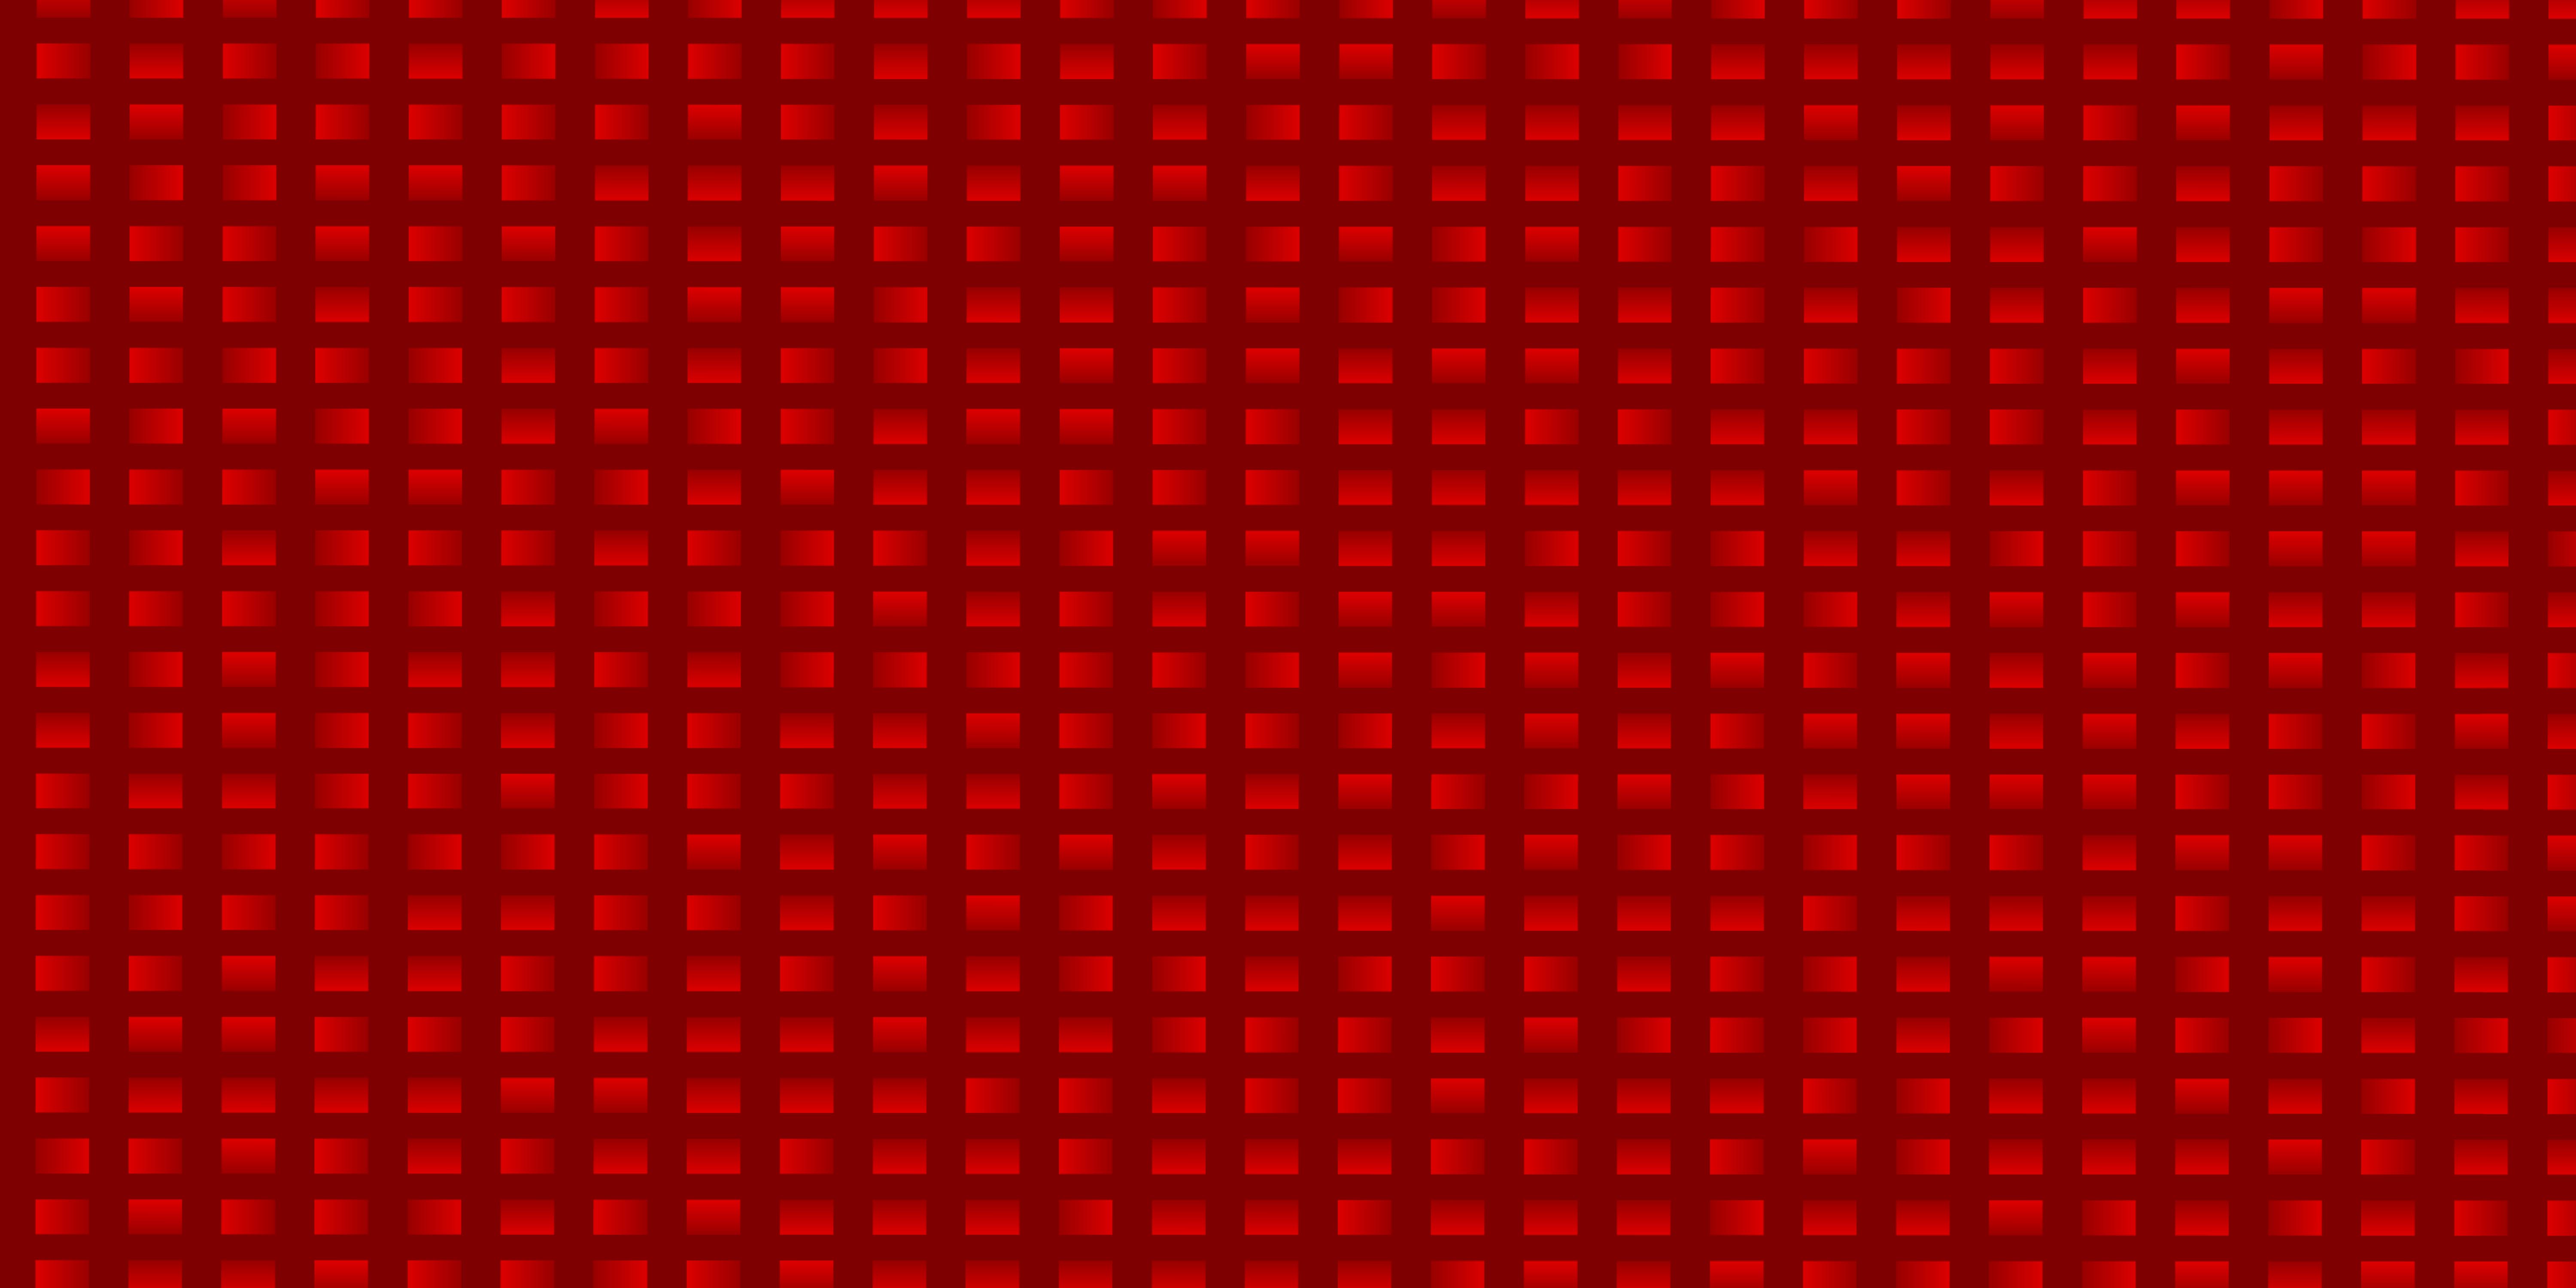 Định dạng vector đỏ nhạt với đường, hình chữ nhật. Nghệ thuật Vector 1823345... - một tác phẩm nghệ thuật mang tính sáng tạo và đặc sắc. Với sự kết hợp độc đáo giữa màu đỏ nhạt và các hình chữ nhật, hình ảnh này khiến người xem bị thu hút ngay lập tức.